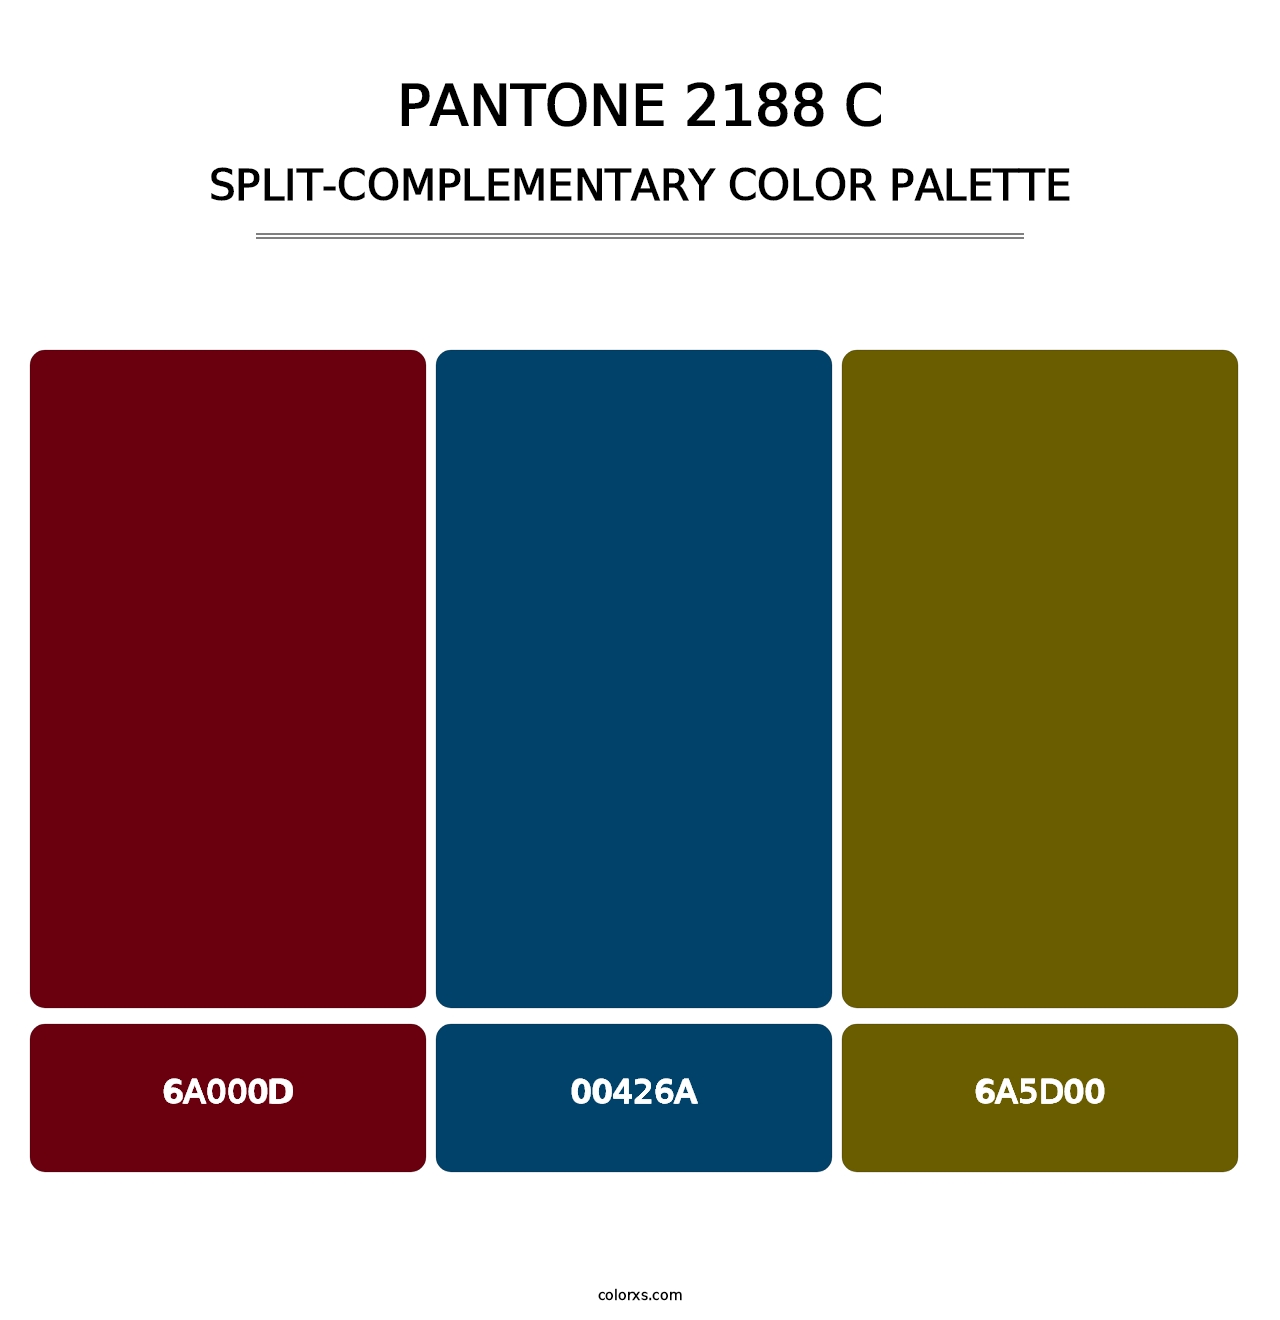 PANTONE 2188 C - Split-Complementary Color Palette